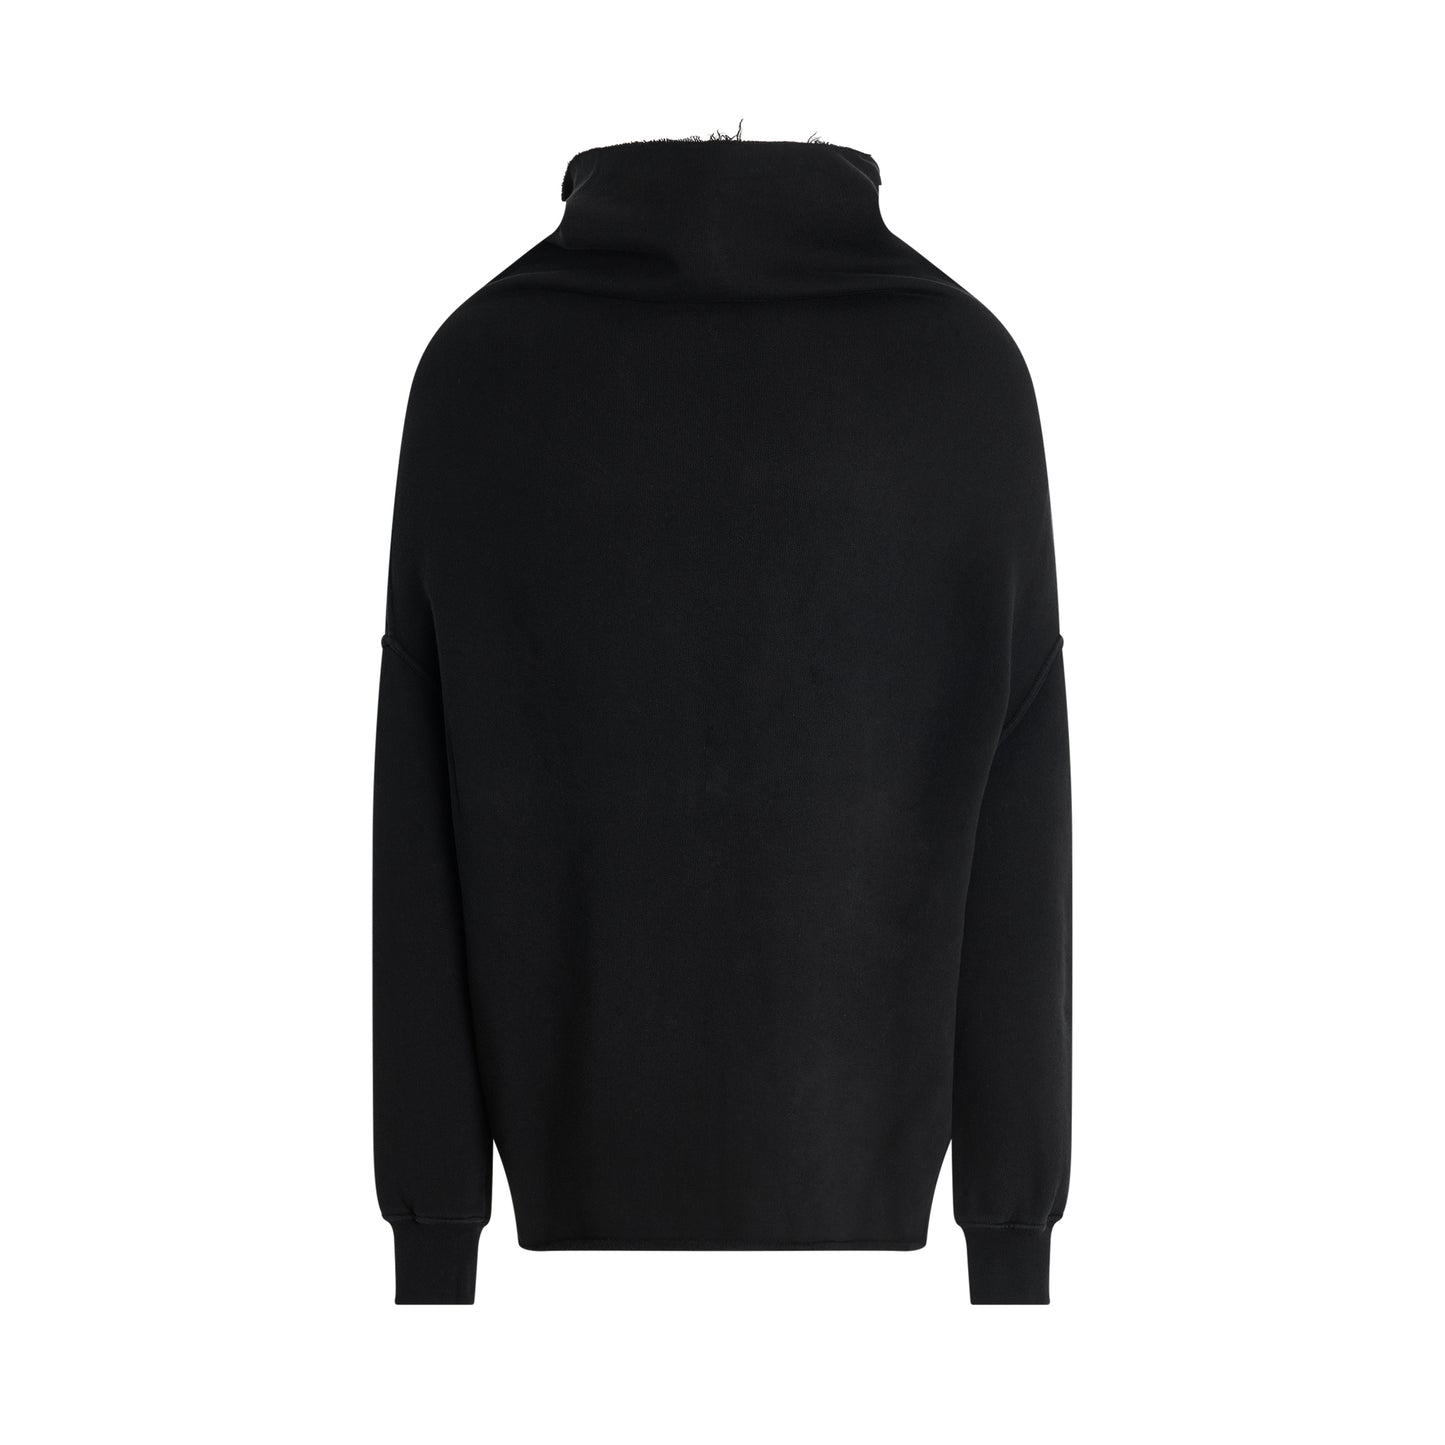 Shroud Sweatshirt in Black